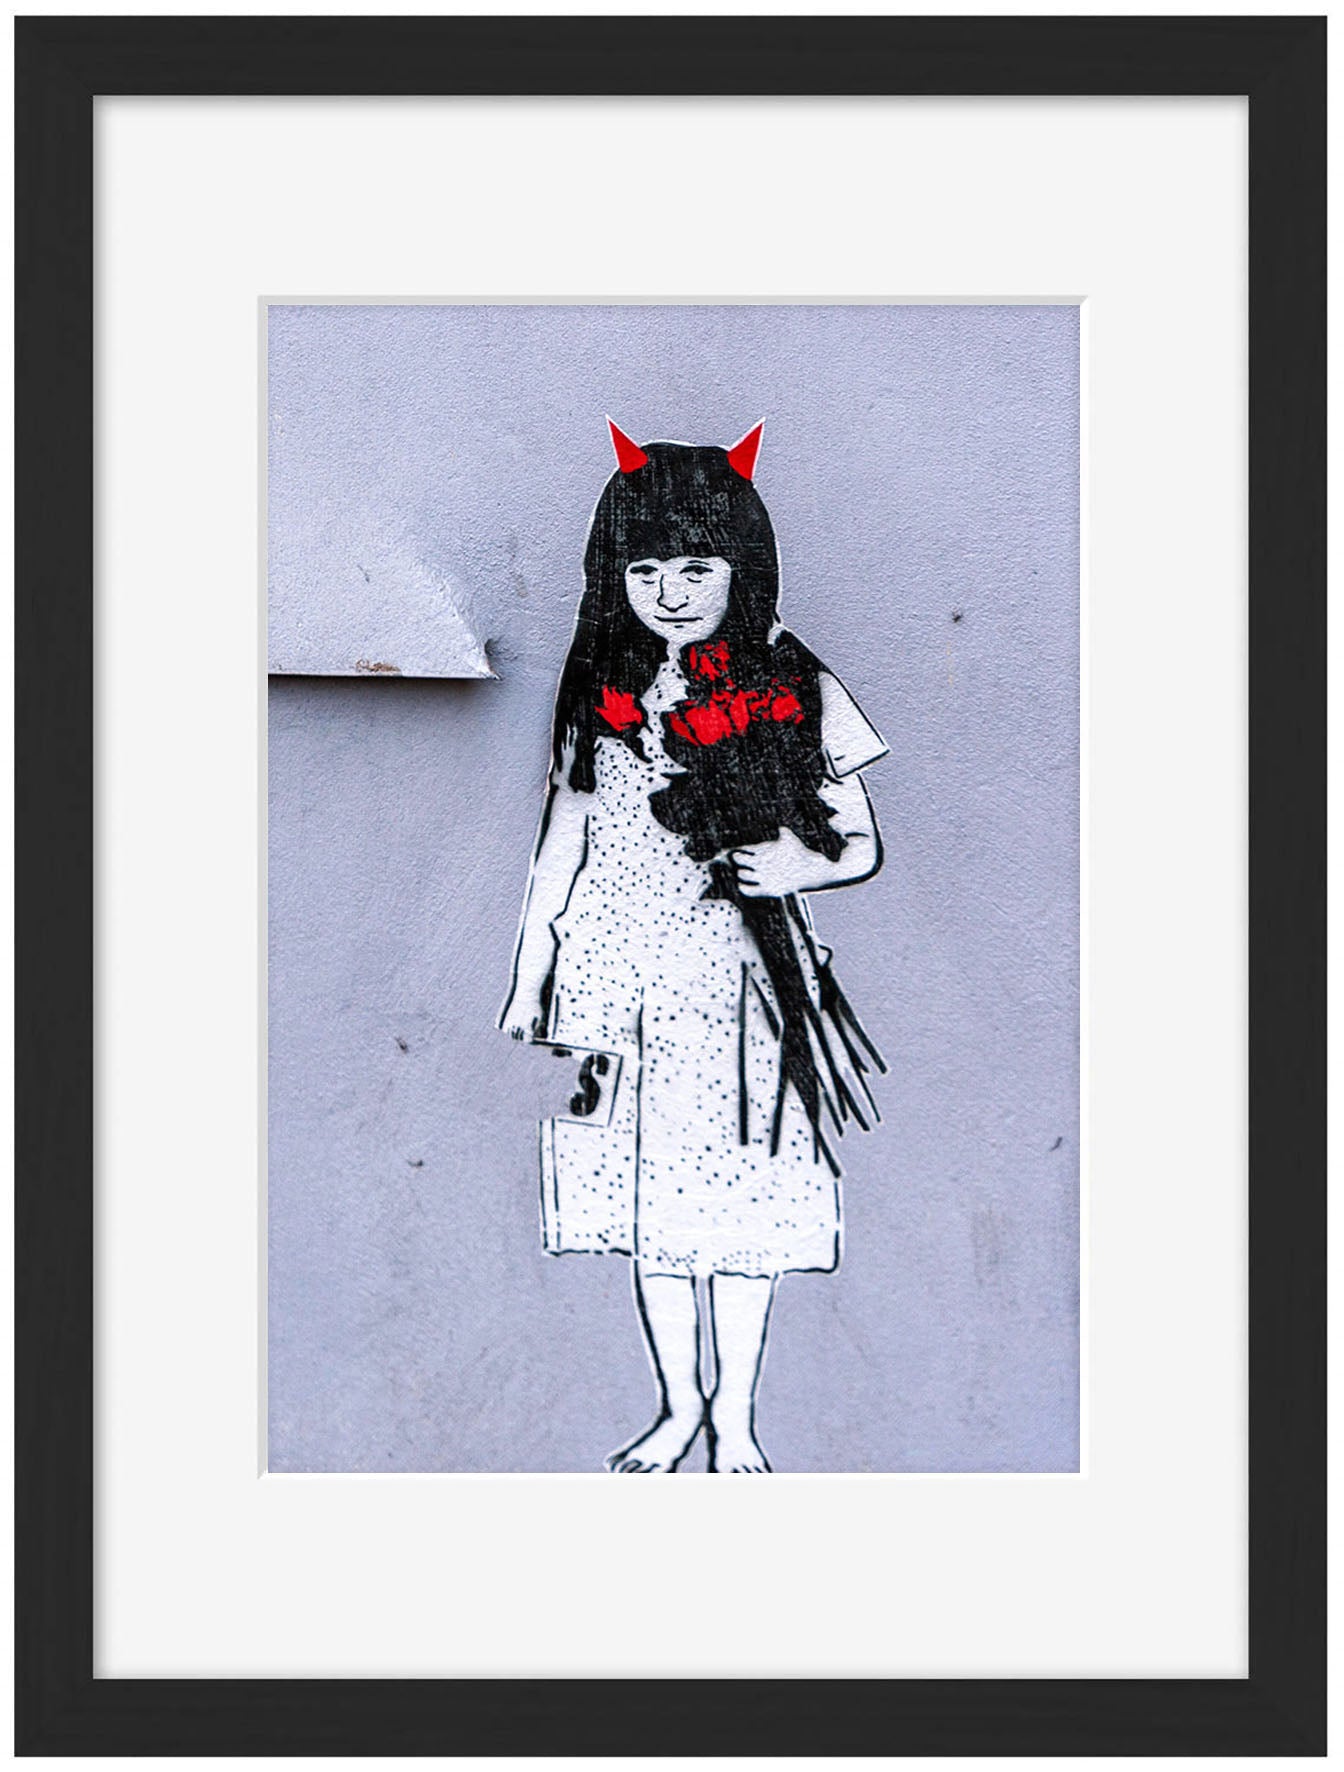 Girl with red horns-banksy, print-Framed Print-30 x 40 cm-BLUE SHAKER